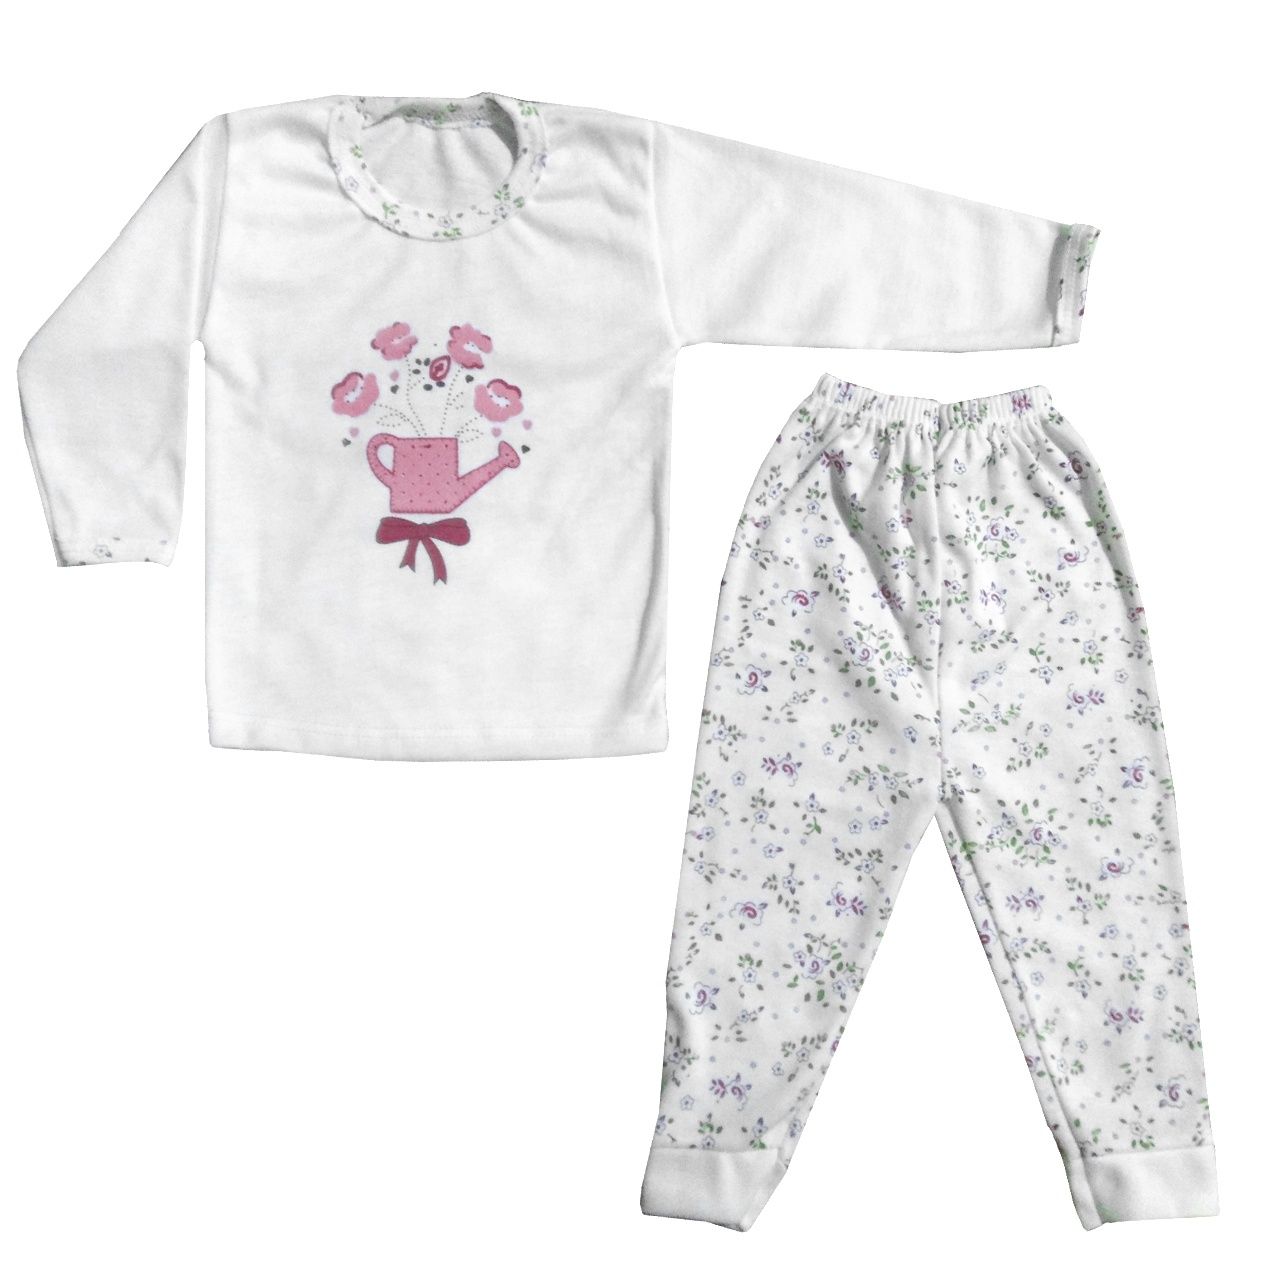 ست تی شرت و شلوار نوزادی طرح گل و آبپاش -  - 1